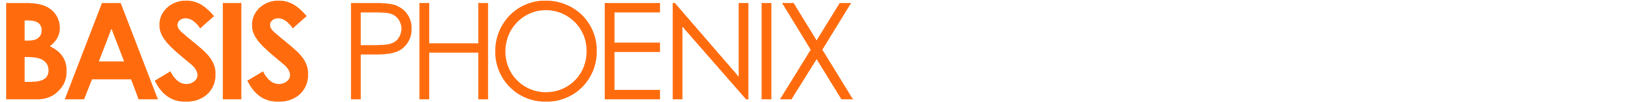 BASIS Phoenix text logo